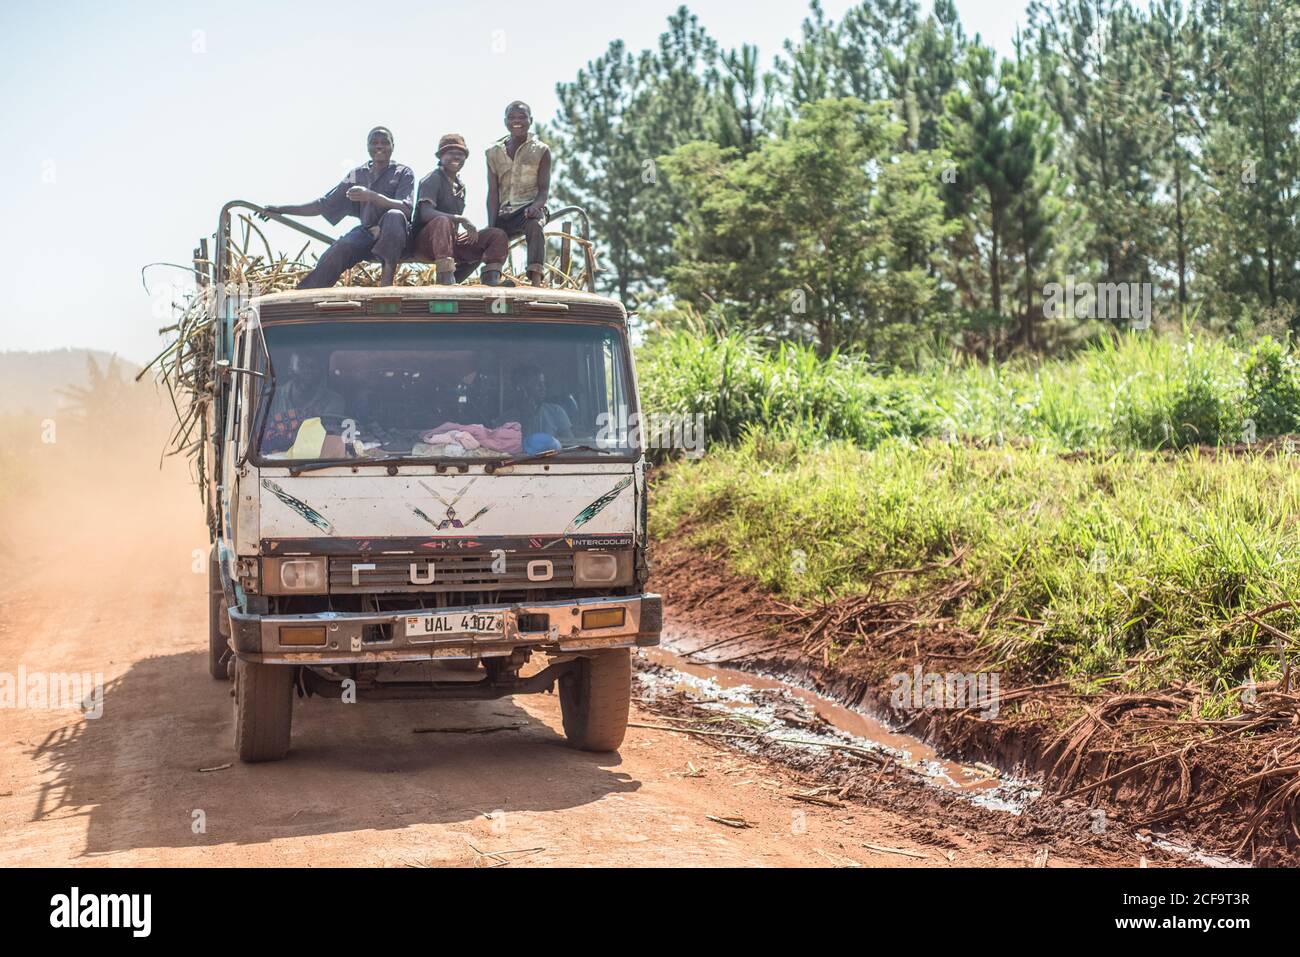 Uganda - 26. November 2016: Aufgeregte afrikanische Arbeiter sitzen auf dem Trailerzaun auf dem Kabinendach und lächeln vor der Kamera, während ein Mitarbeiter an heißen sonnigen Tagen mit einem LKW Fracht auf unbefestigten Straßen transportiert Stockfoto